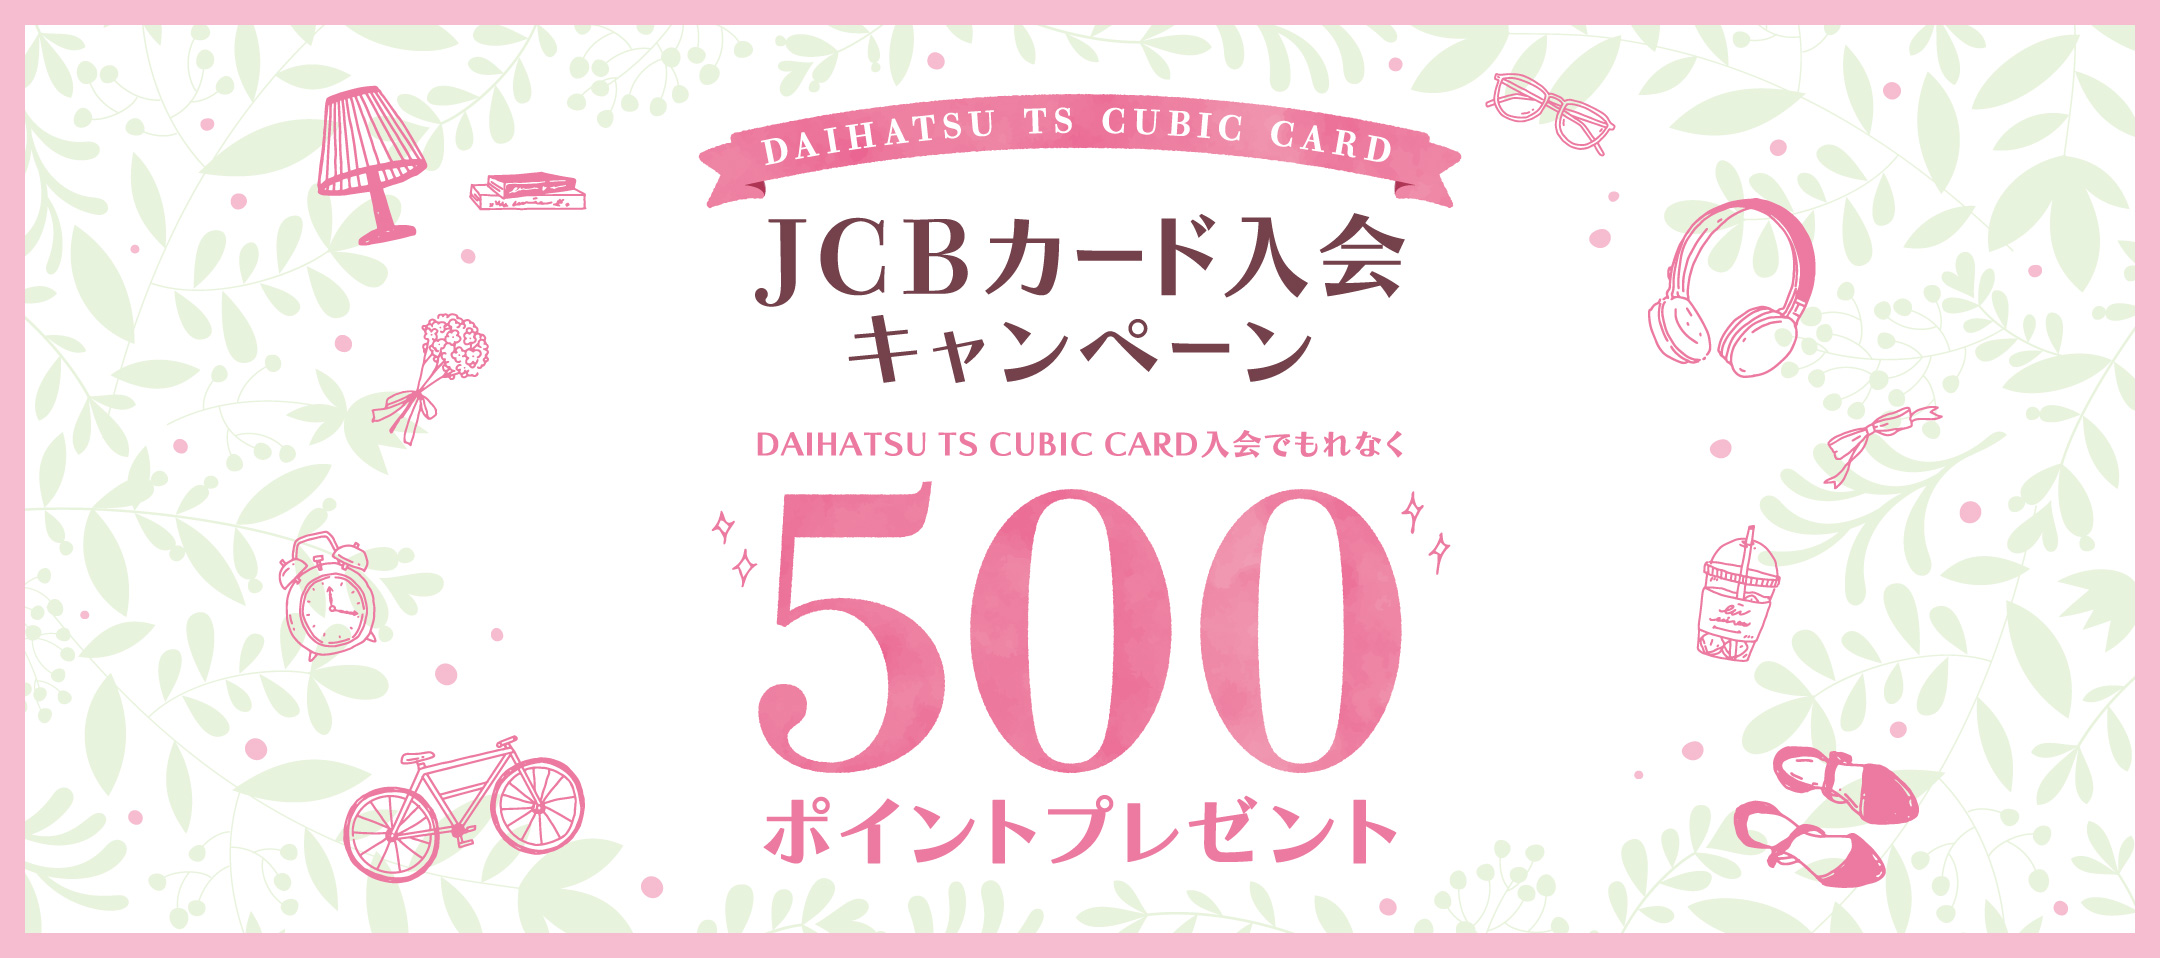 DAIHATSU TS CUBIC CARD JCBカード入会キャンペーン DAIHATSU TS CUBIC CARD入会でもれなく500ポイントプレゼント